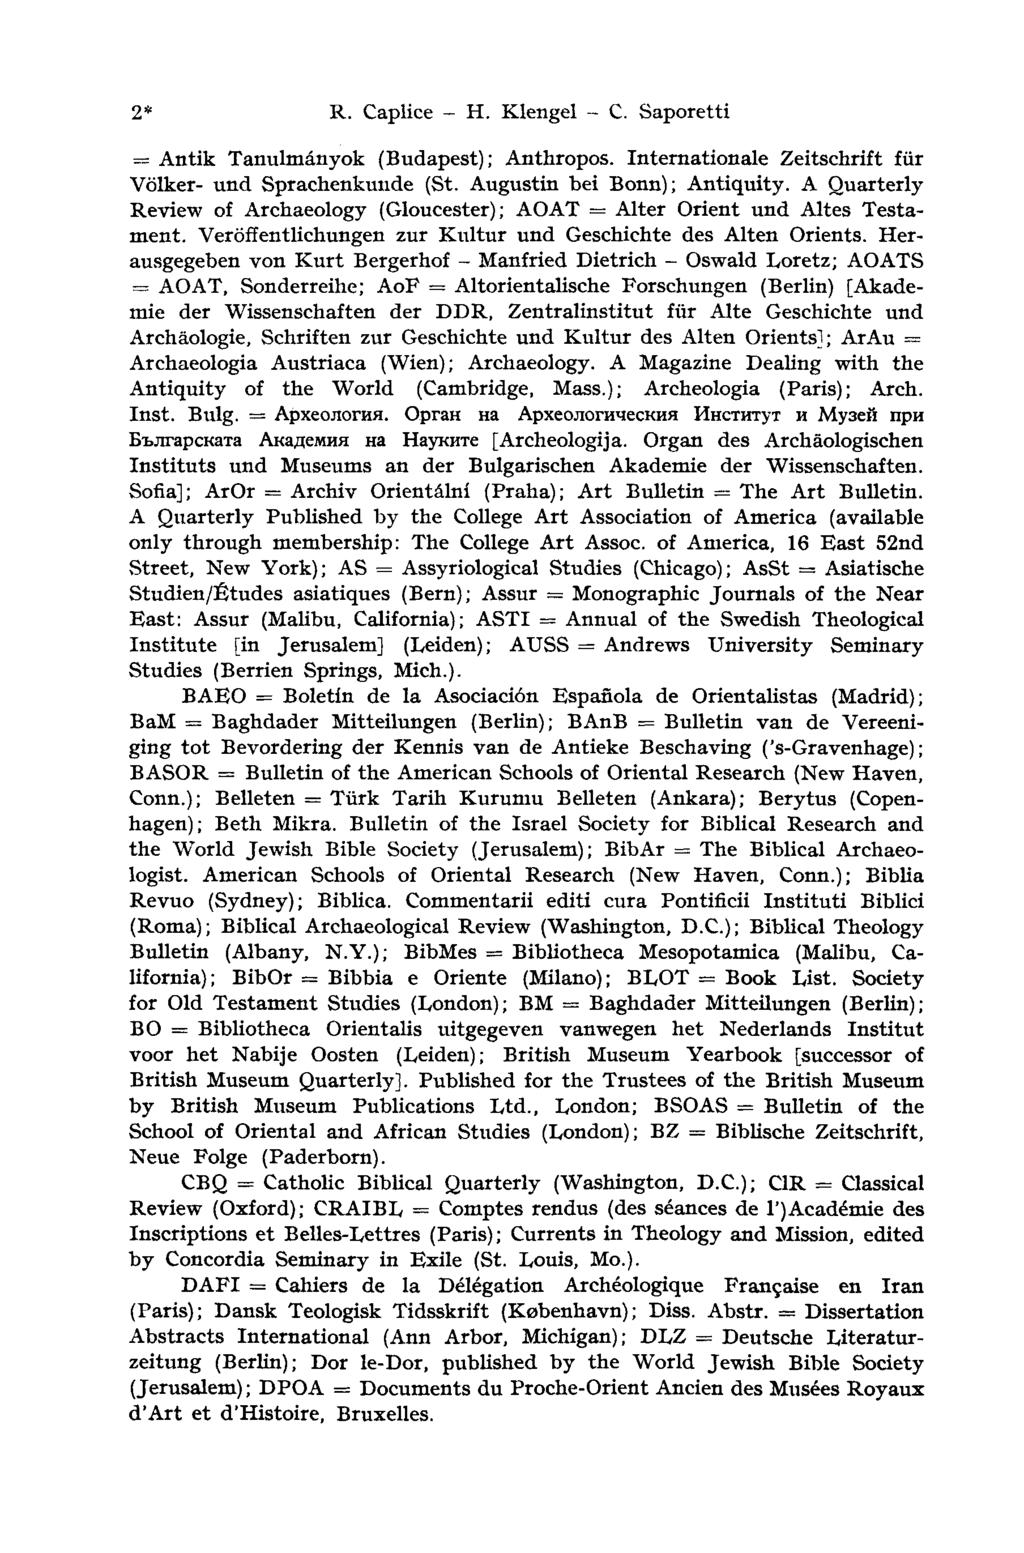 2* R. Caplice - H. Klengel - С. Saporetti = Antik Tanulmányok (Budapest); Anthropos. Internationale Zeitschrift für Völker- und Sprachenkuude (St. Augustin bei Bonn); Antiquity.